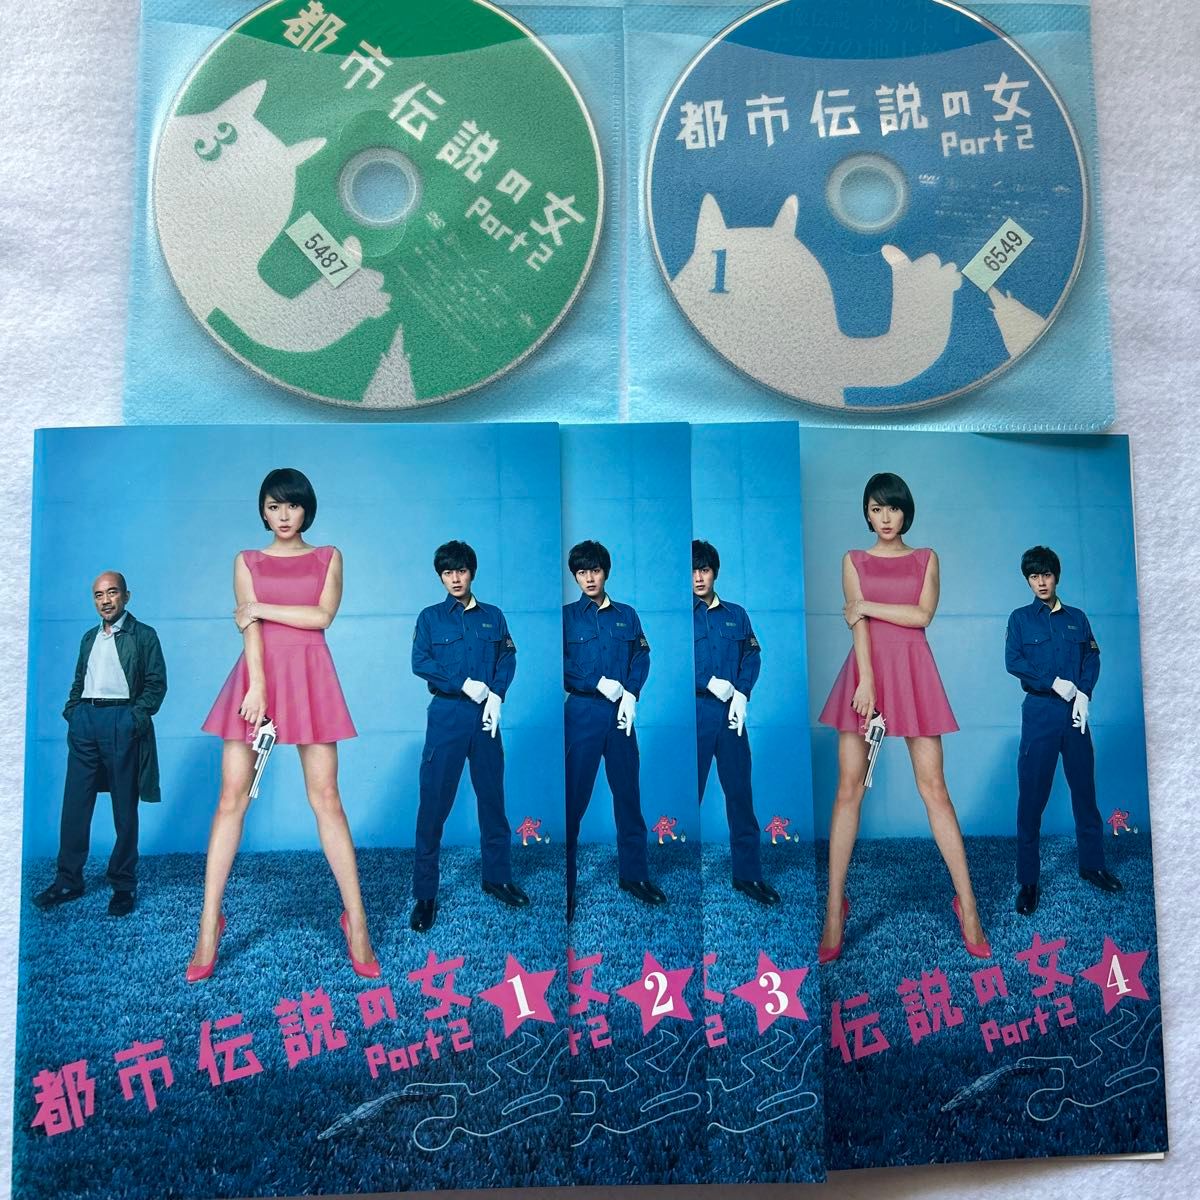 都市伝説の女 PART2  全4巻  レンタル版DVD  長澤まさみ